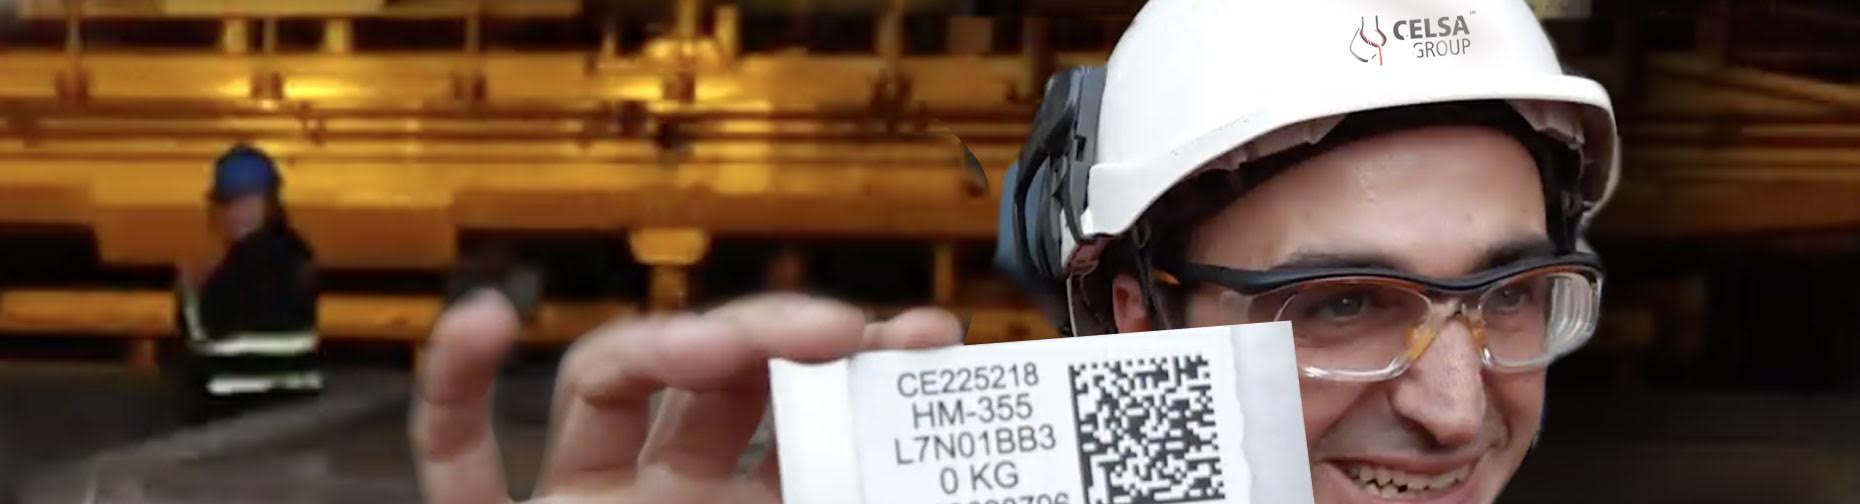 Trabajador de Celsa Group sosteniendo una tarjeta con un código QR